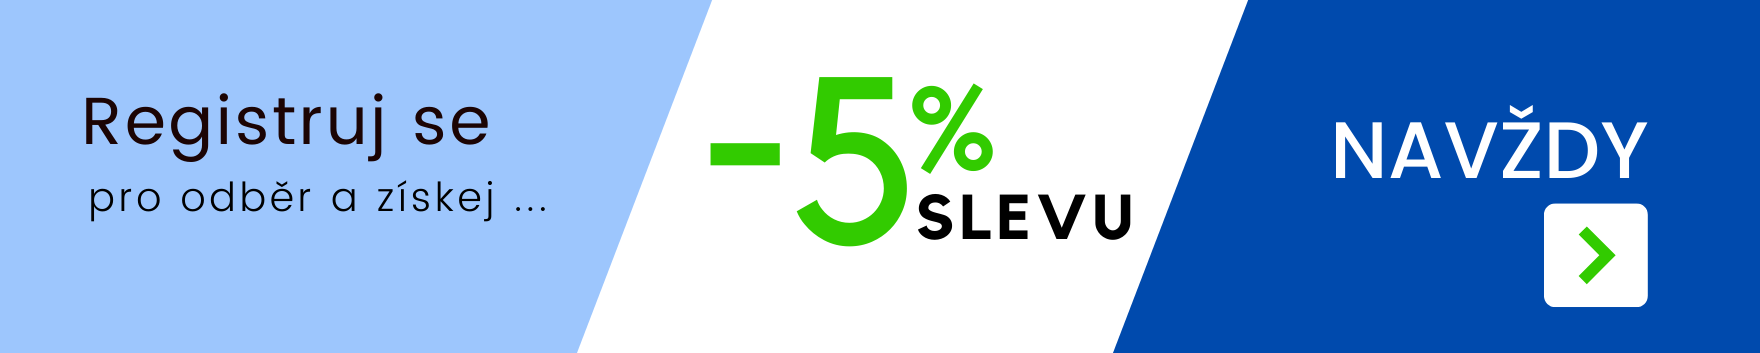 Věrnostní SLEVA 5% NAVŽDY | www.SuperShoes.cz